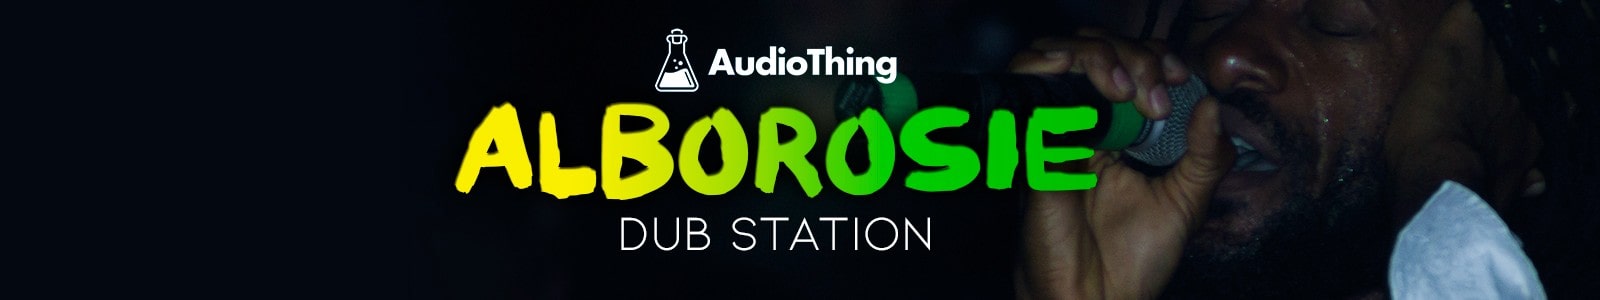 AudioThing Alborosie Dub Station